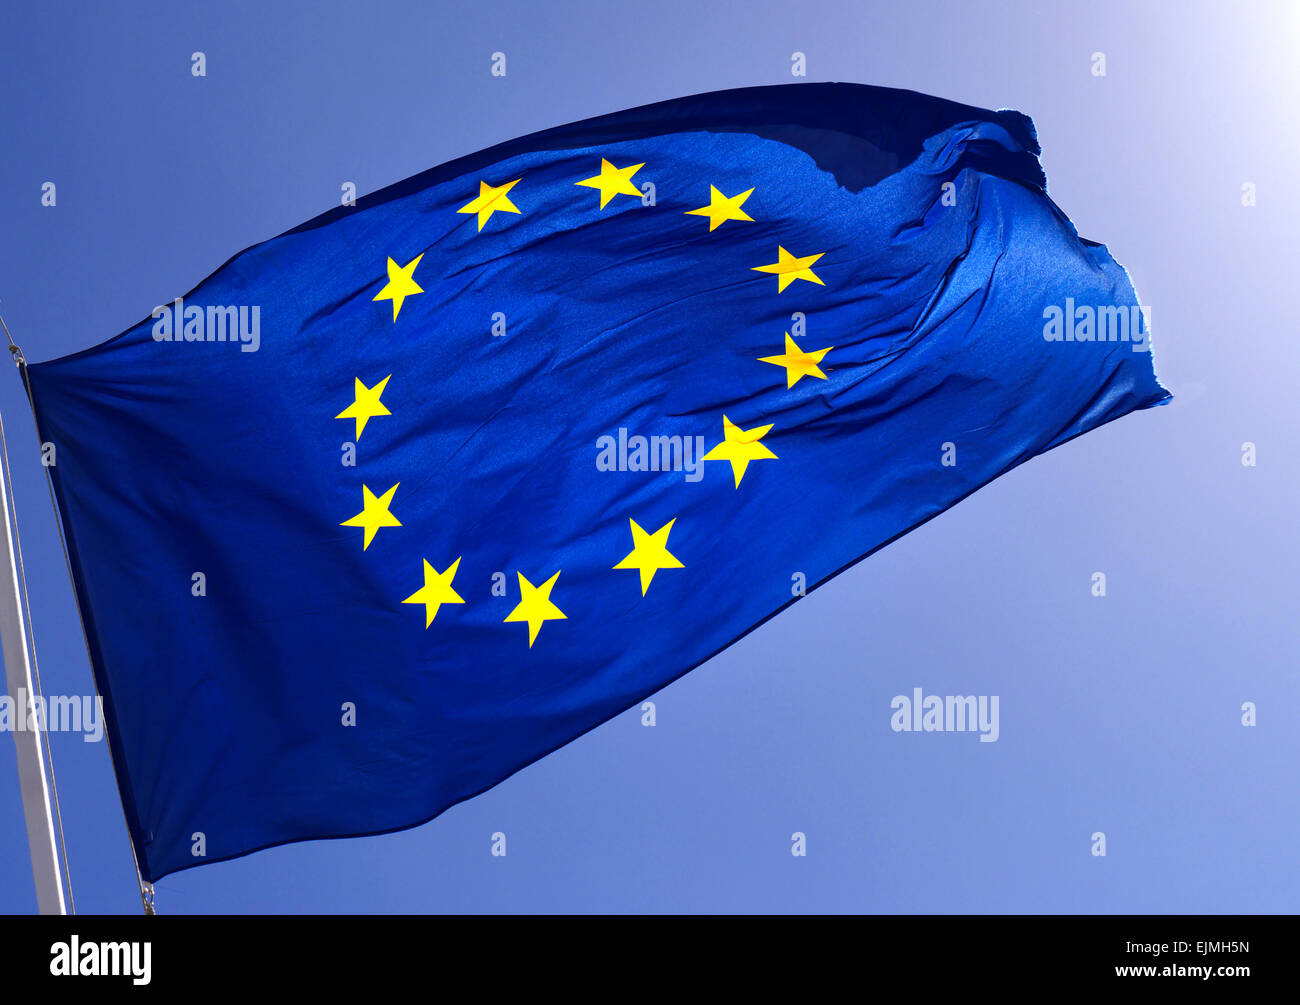 Drapeau de l'UE ciel bleu ensoleillé bold smart Communauté européenne l'Union flag flying voletant dans la brise geler une action contre un rétro-éclairé bleu ciel clair Banque D'Images